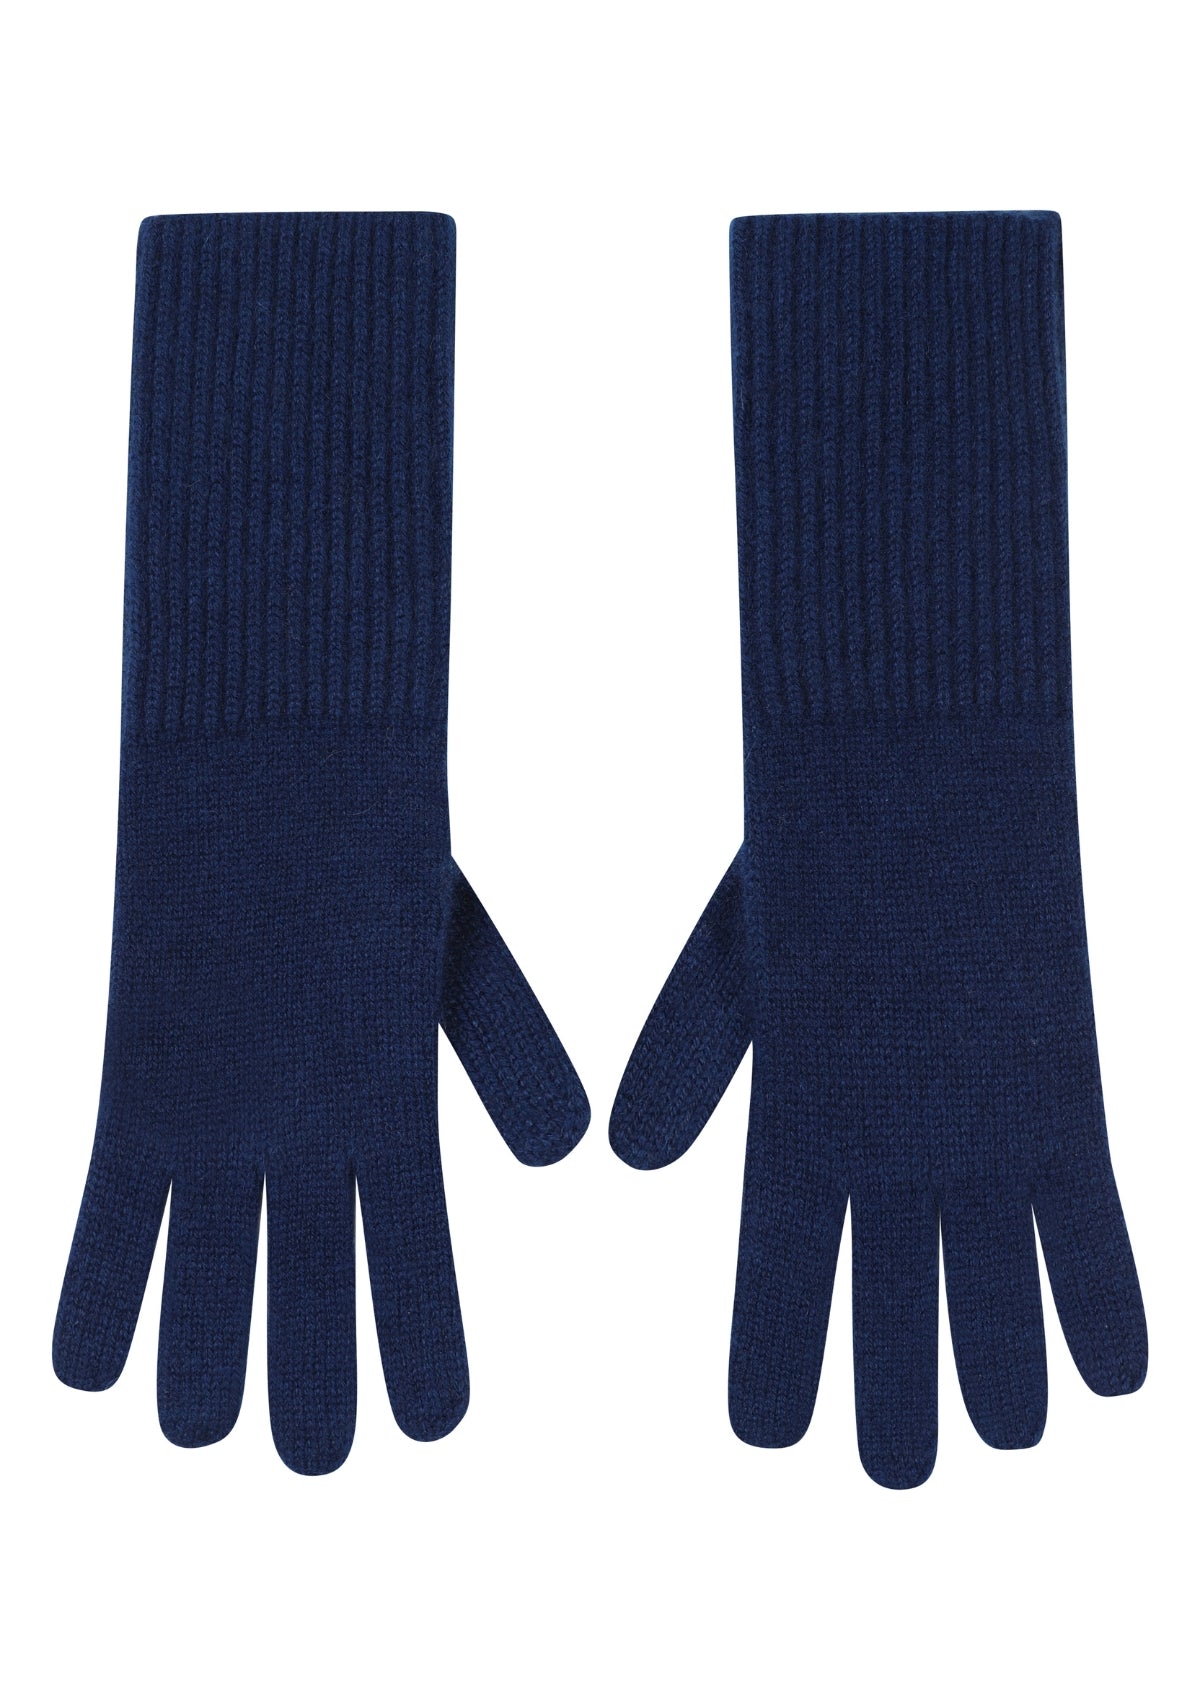 Cashmere Glove in Midnight Blue